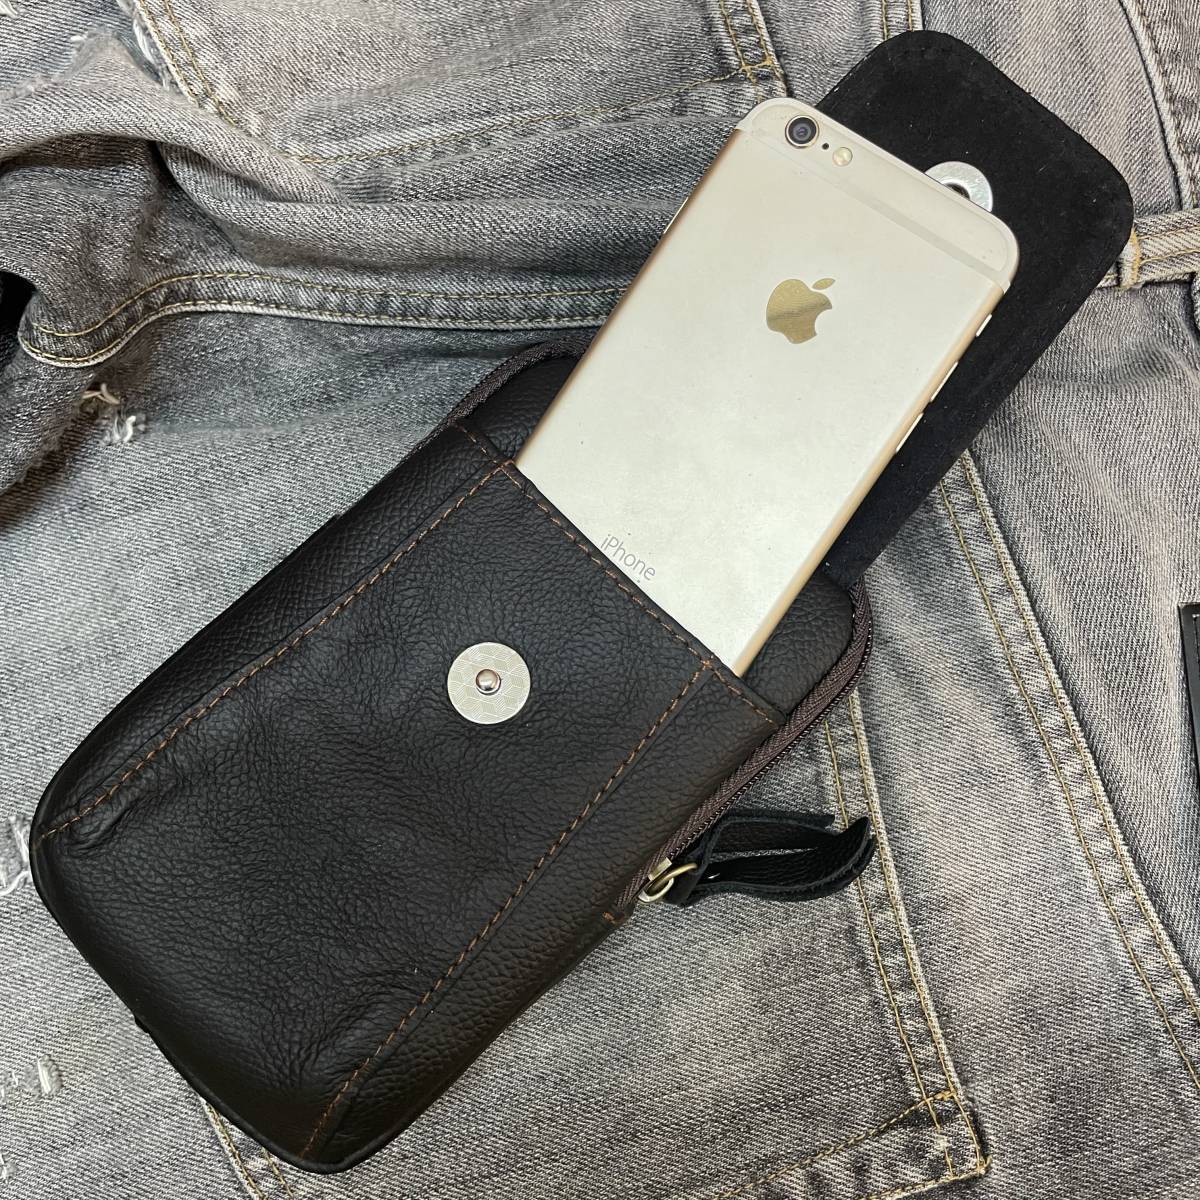 新品 本革 レザー ウエストバック ベルトポーチ 携帯電話ポケット スマホ iPhone ナスカン カラビナ 磁石 小物入れ 黒 ブラック 送料無料